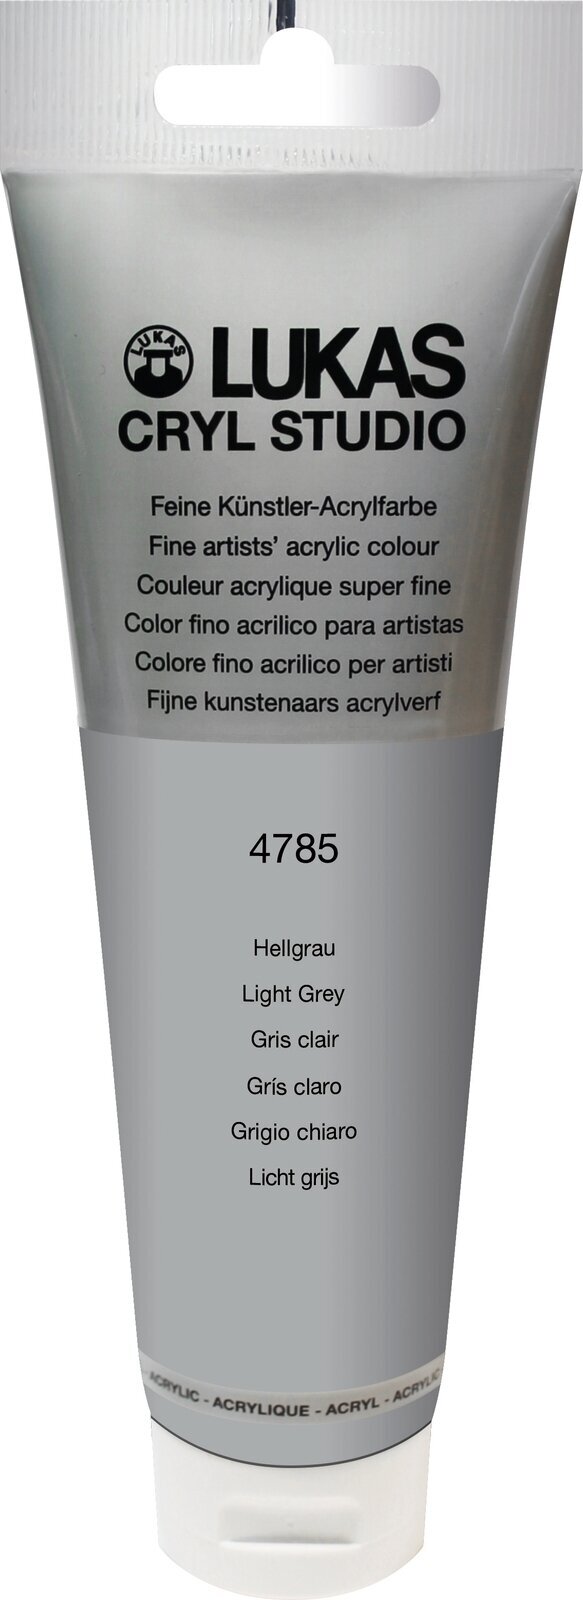 Akrylová barva Lukas Cryl Studio Akrylová barva 125 ml Light Grey